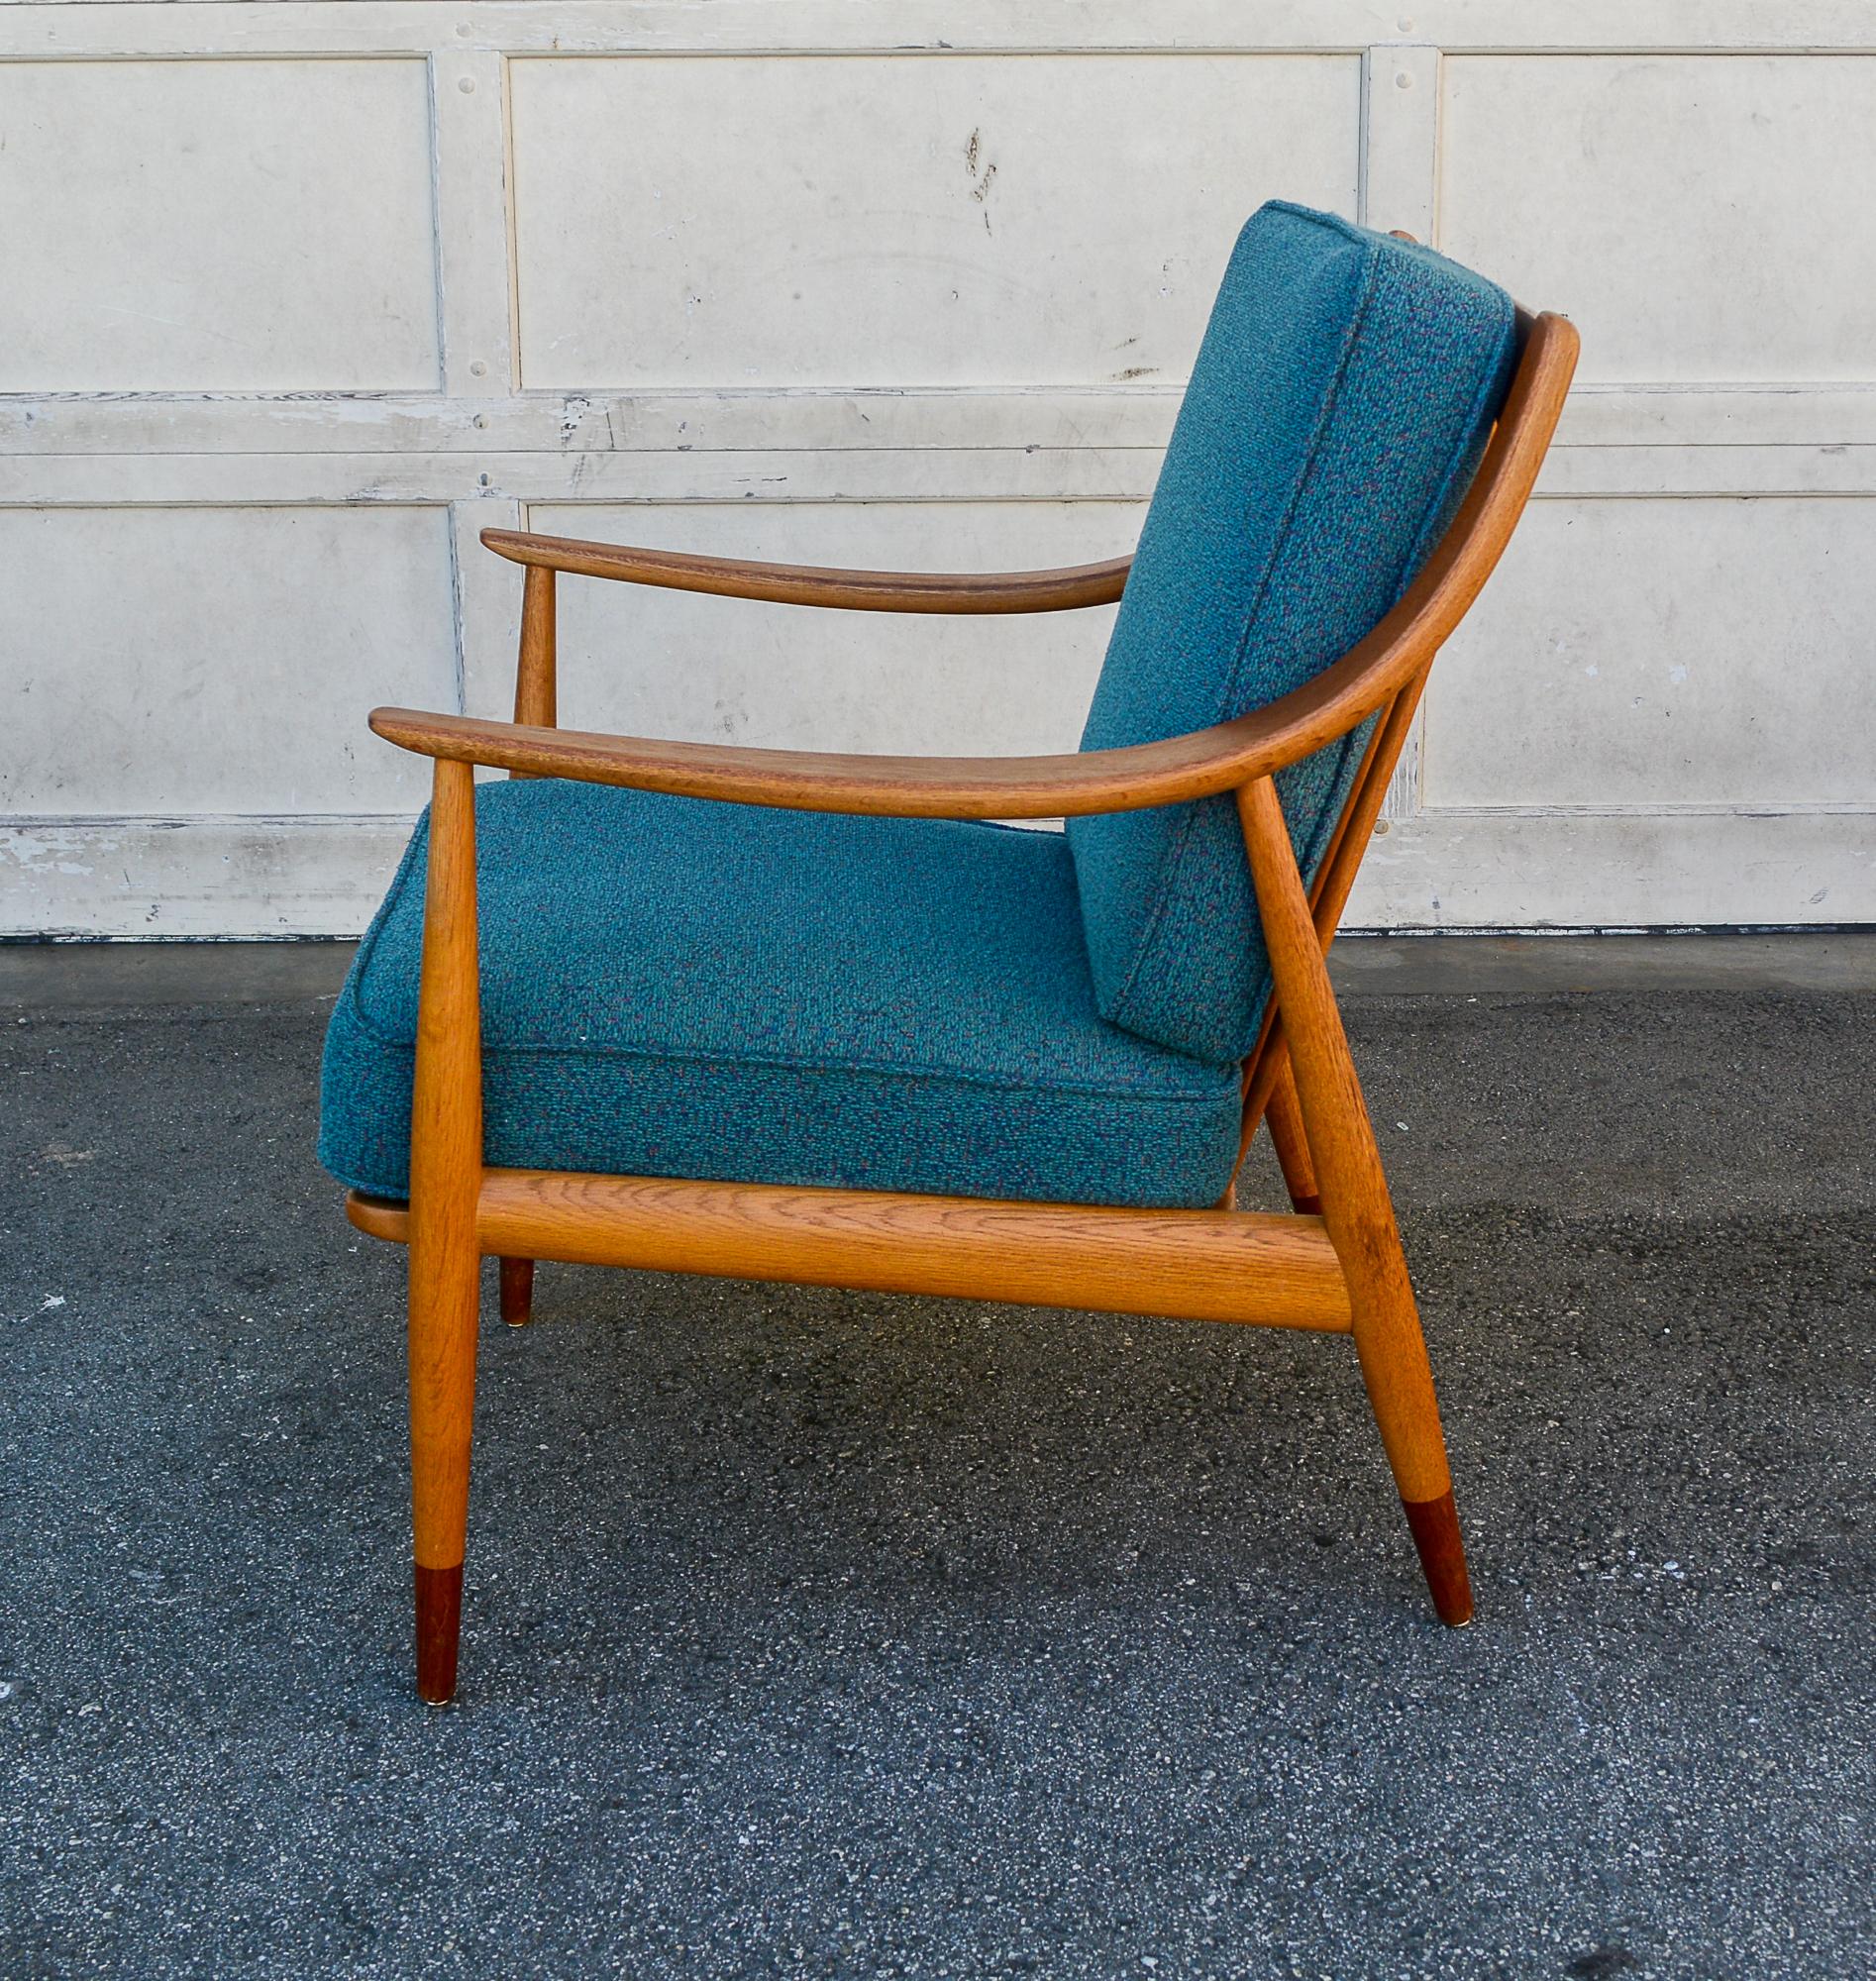 Chaise longue conçue par Peter Hvidt et Orla Molgaard-Nielsen. Cette chaise a été fabriquée par France et Daverkosen au Danemark et vendue au détail par John Stuart aux États-Unis. Il s'agit de la version la plus recherchée de cette chaise, avec un